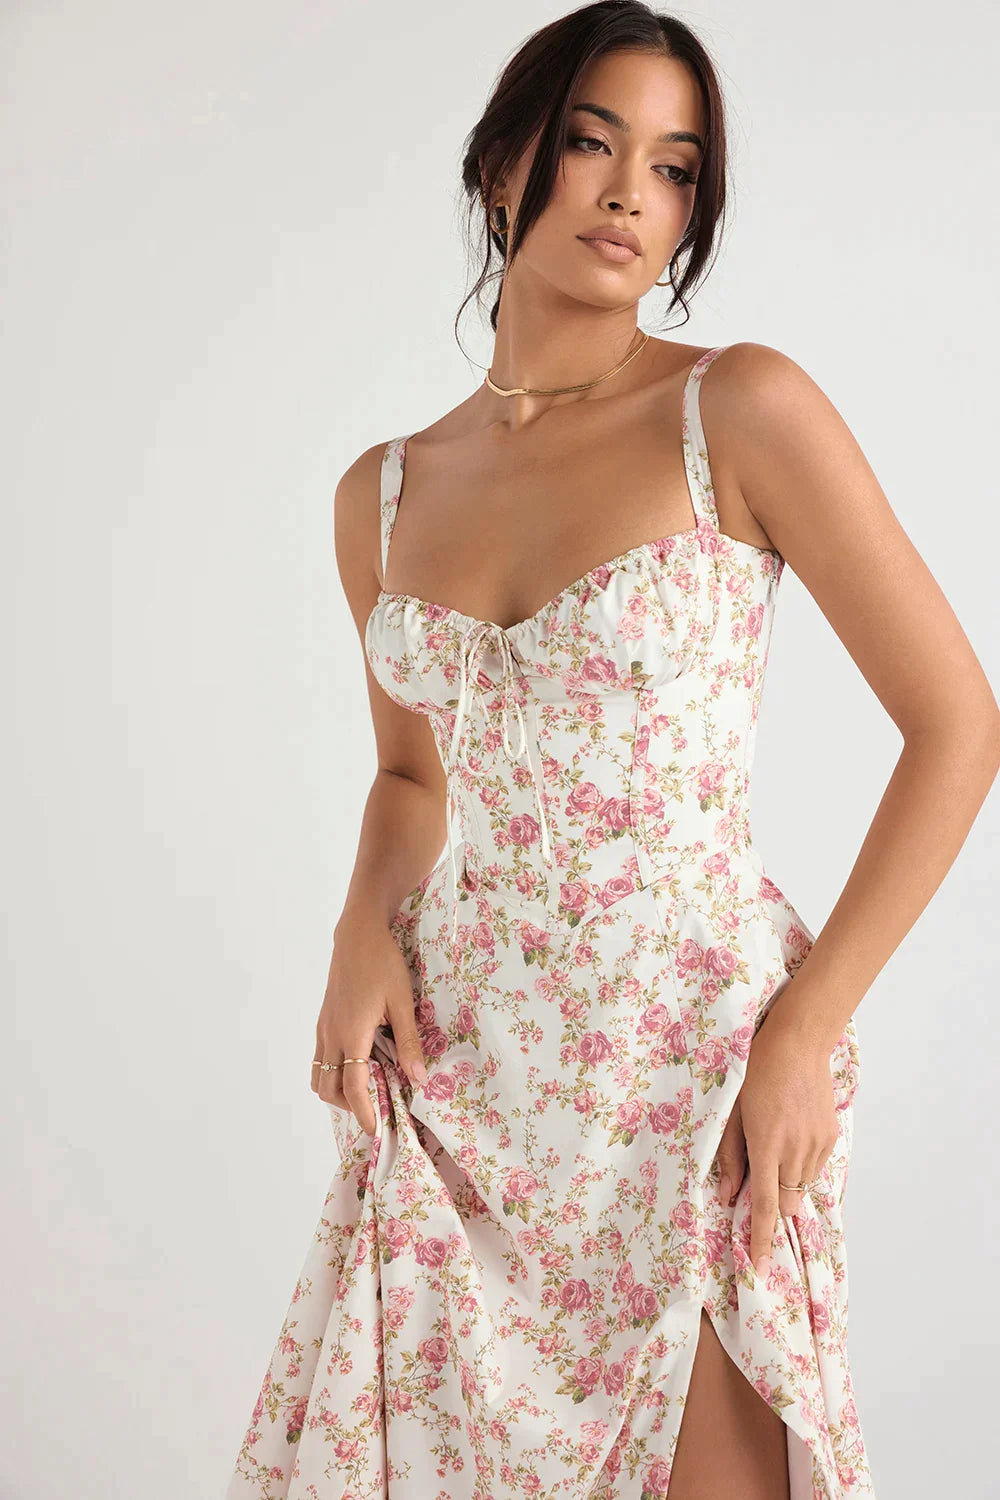 Summer Women Elegant Floral Bustier Midriff Waist Shaper Dress